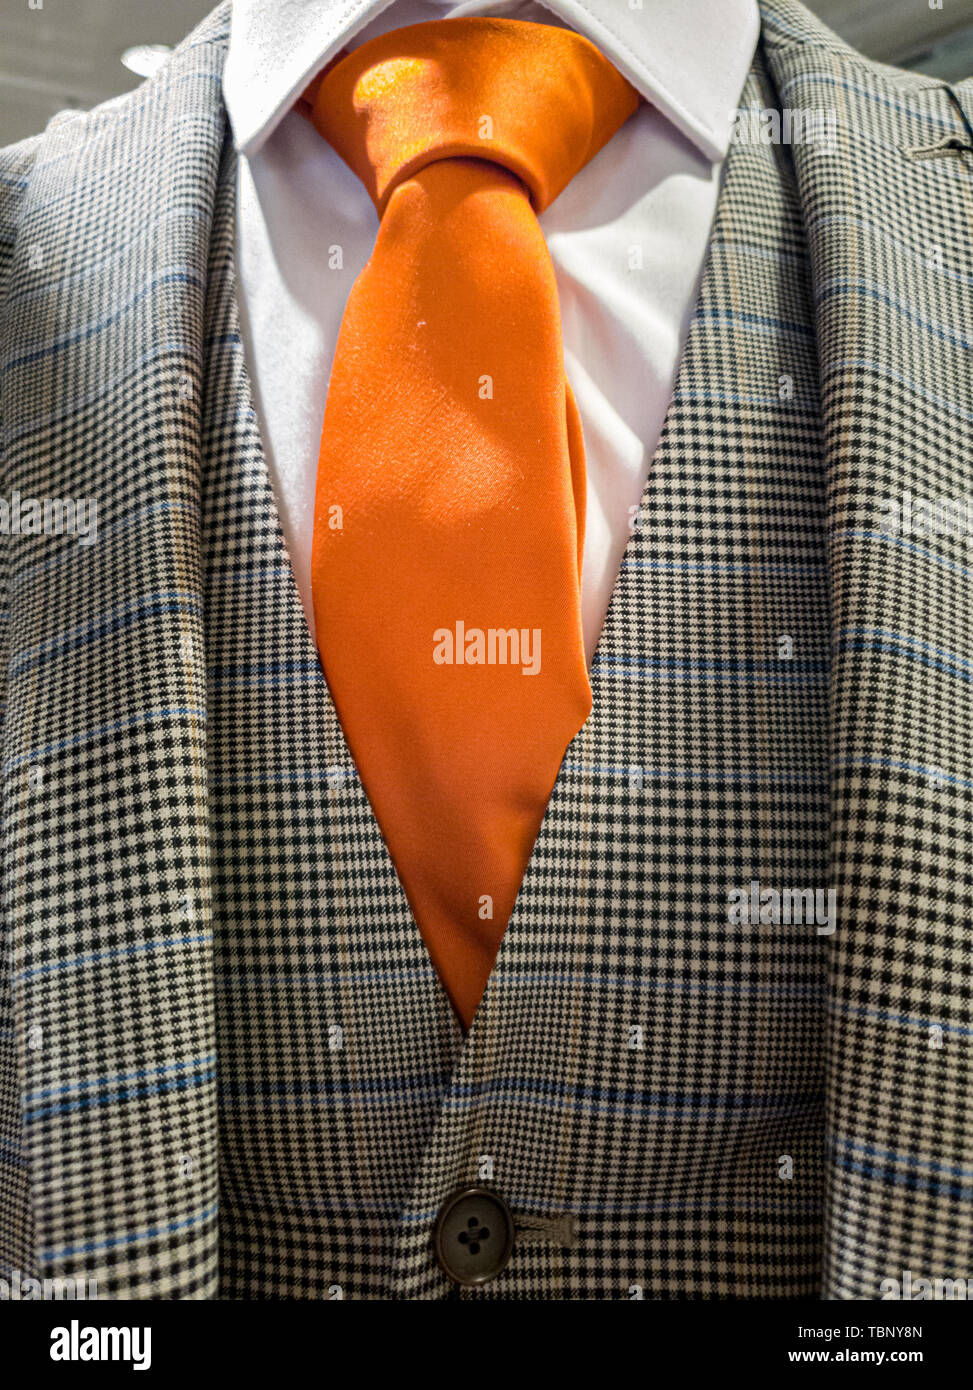 Últimas tendencias en traje, camisa y corbata combinación - corbata naranja  Fotografía de stock - Alamy